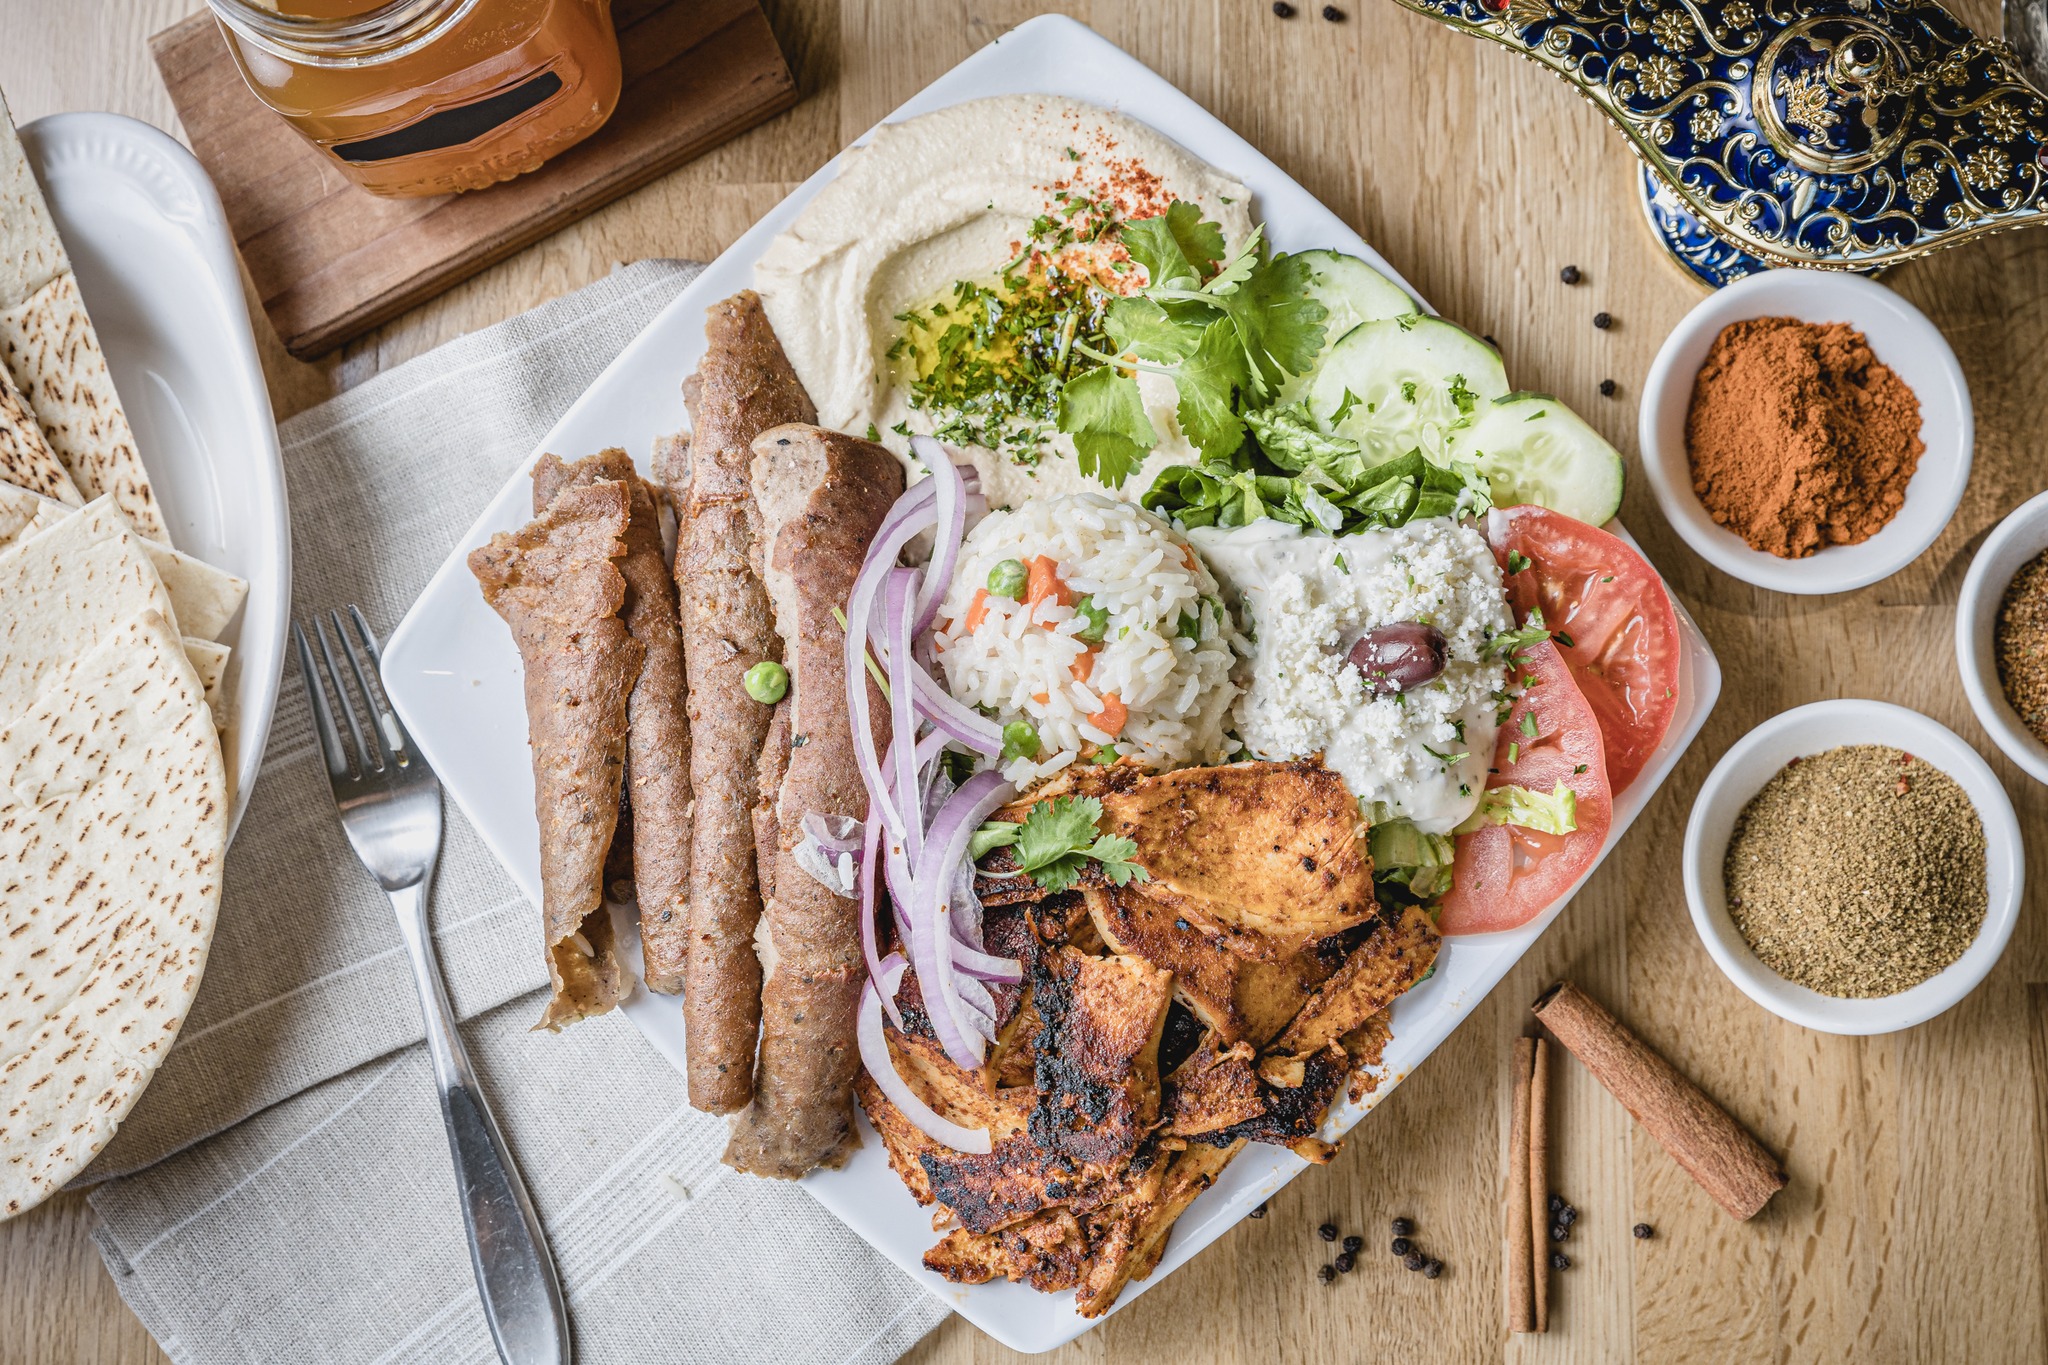 Greek-Lebanese Restaurant Cafe Petra Now Open in Katy